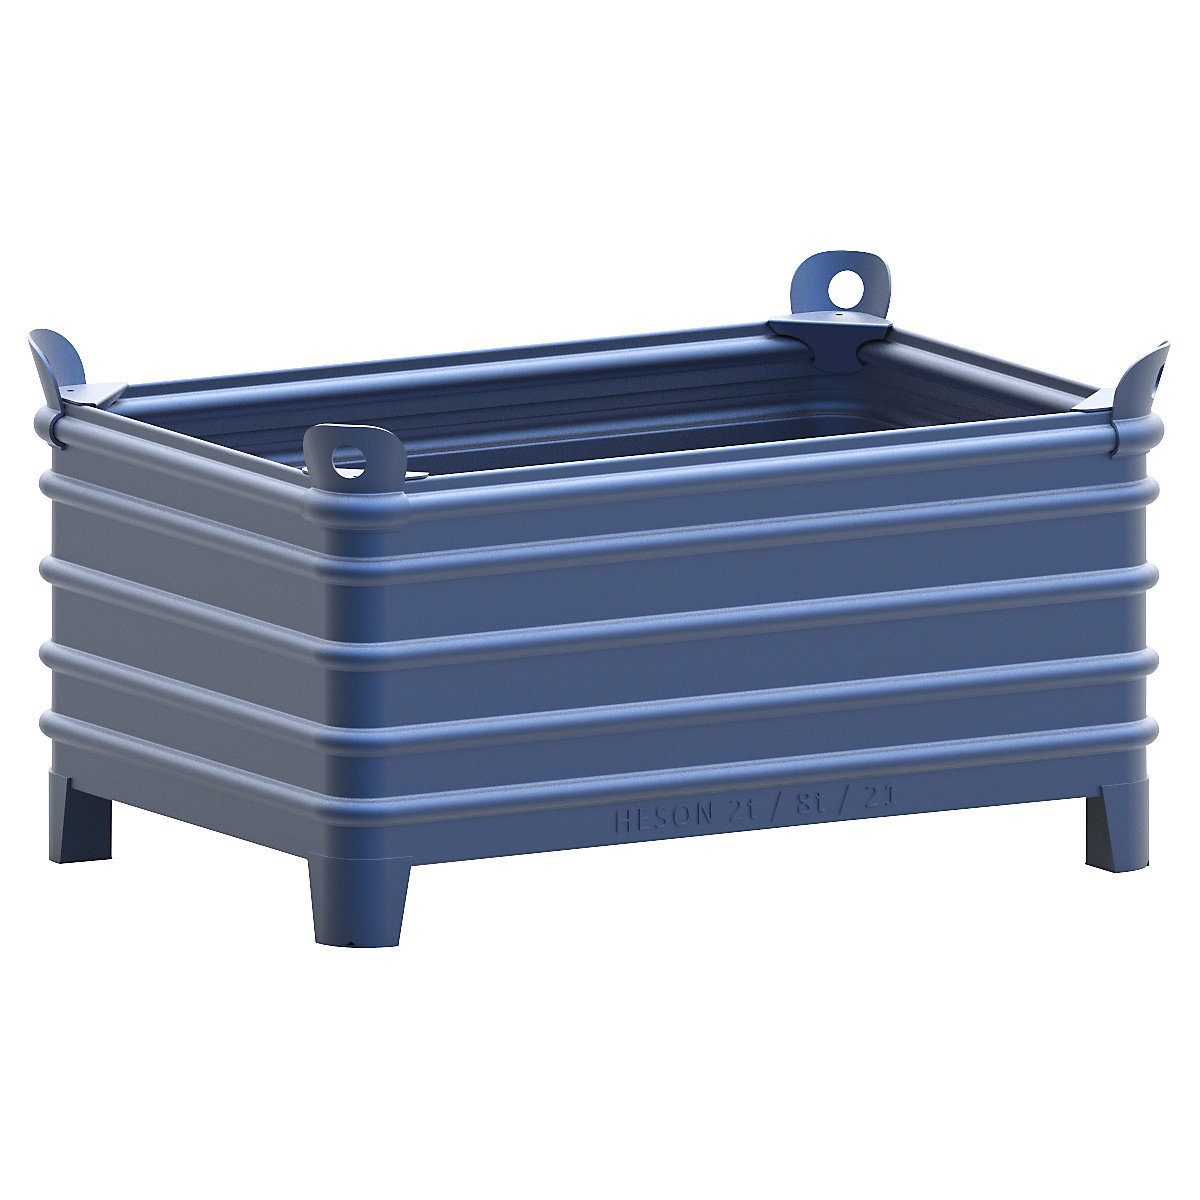 Heson Schwerlast-Stapelbehälter, BxL 800 x 1200 mm, mit Ecktaschen, blau lackiert, ab 1 Stk